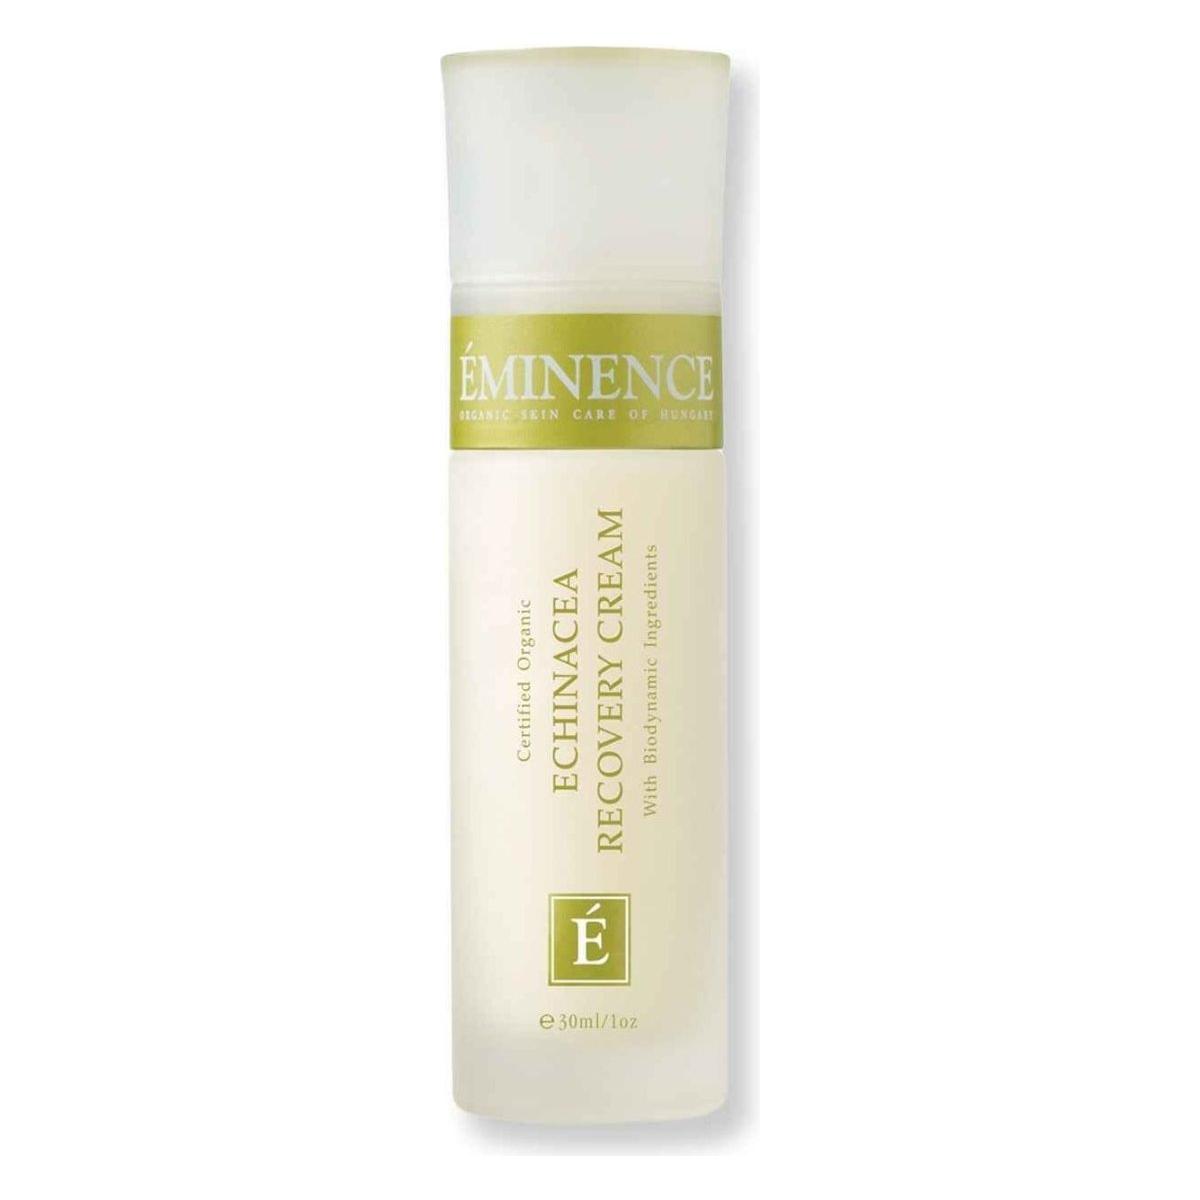 Eminence Echinacea Recovery Cream - 30ml - Glam Global UK